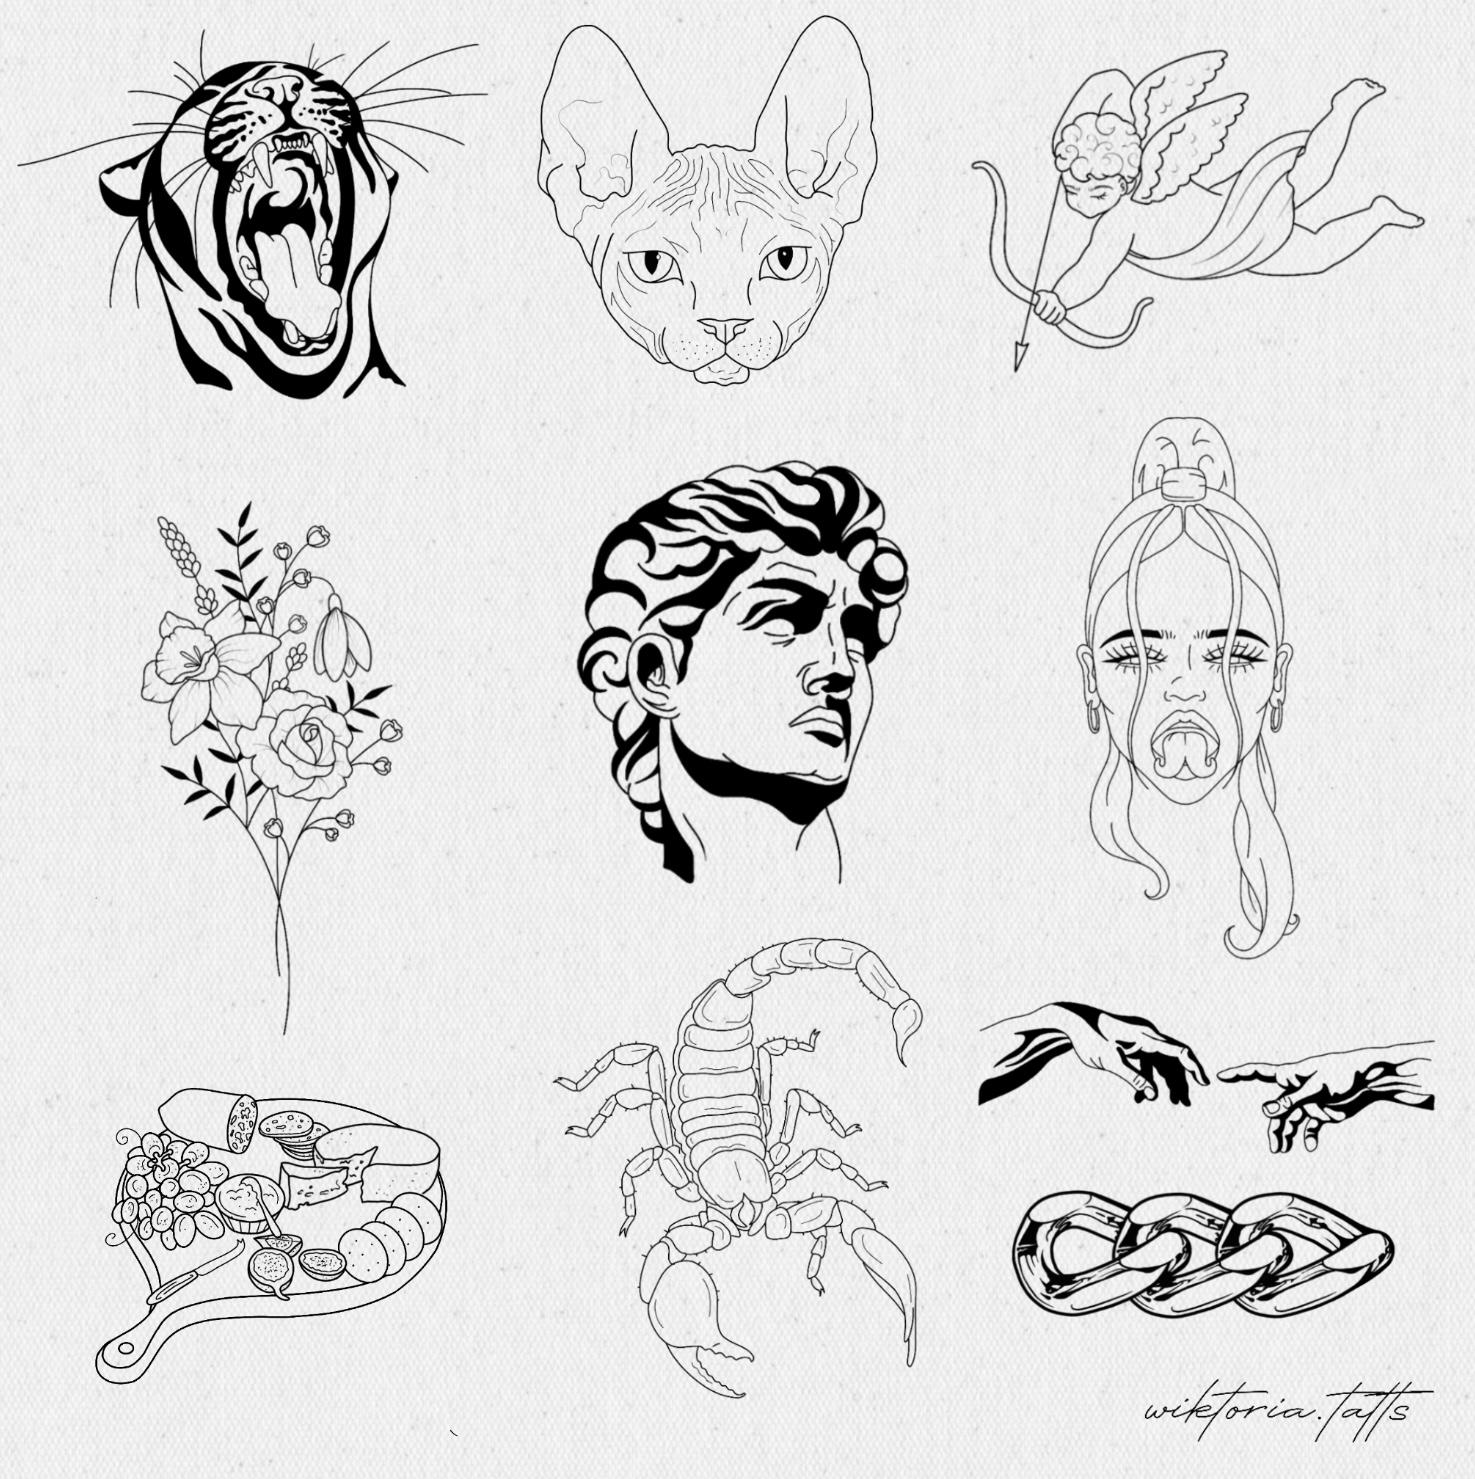 Tattoo artist - Wikipedia